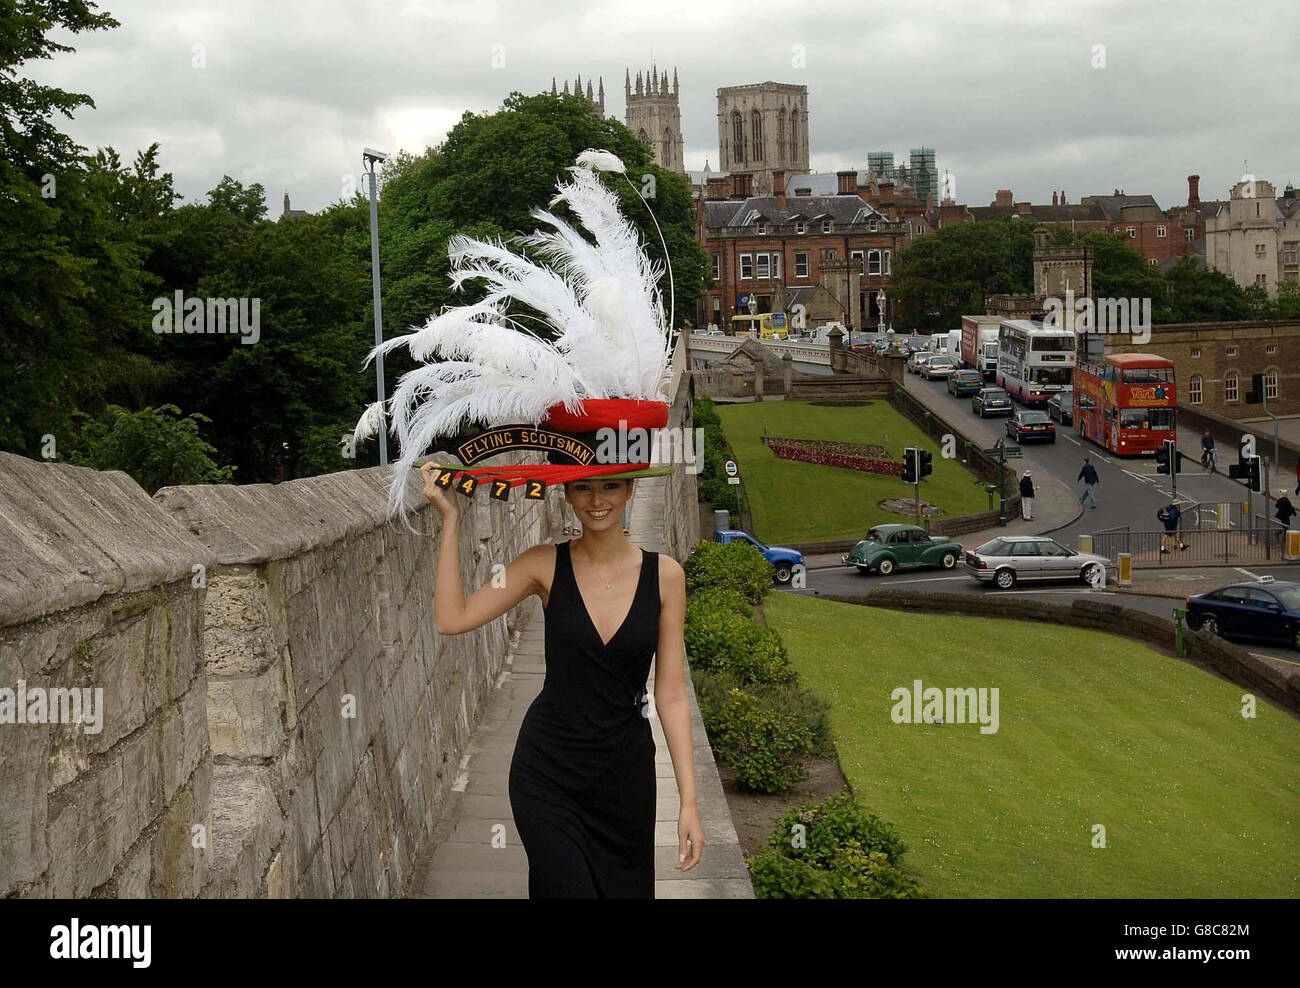 Sara Mahmood mood modella un cappello raffigurante il famoso treno a vapore 'Flying Scotsman', prima della Royal Ascot di questa settimana a York. Foto Stock